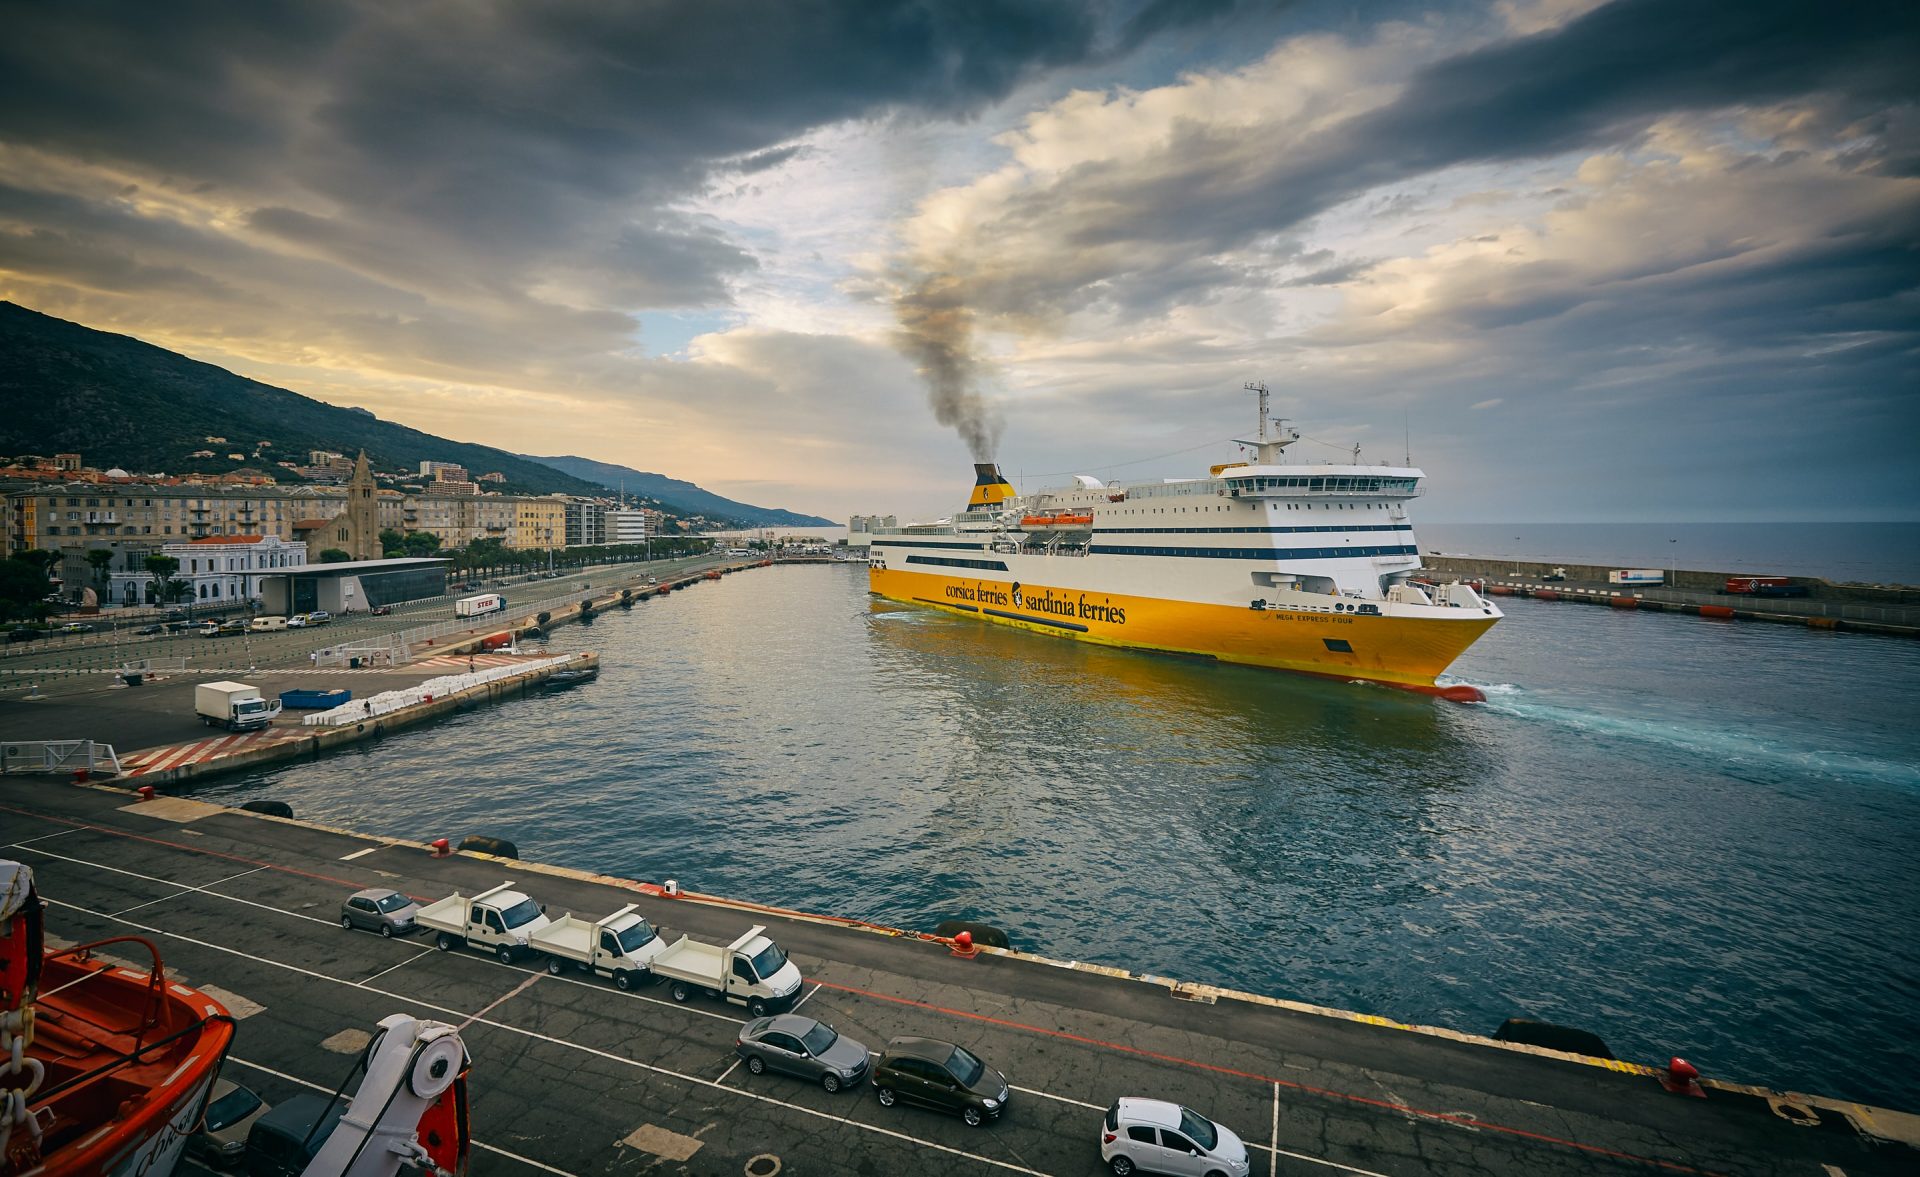 Reiseziele wie Korsika oder Sardinien bieten Kultur und mediteranes Flair und sind daher als Reiseziele mit dem Auto wunderbar geeignet. Bildquelle: © Massimo Virgilio / Unsplash.com